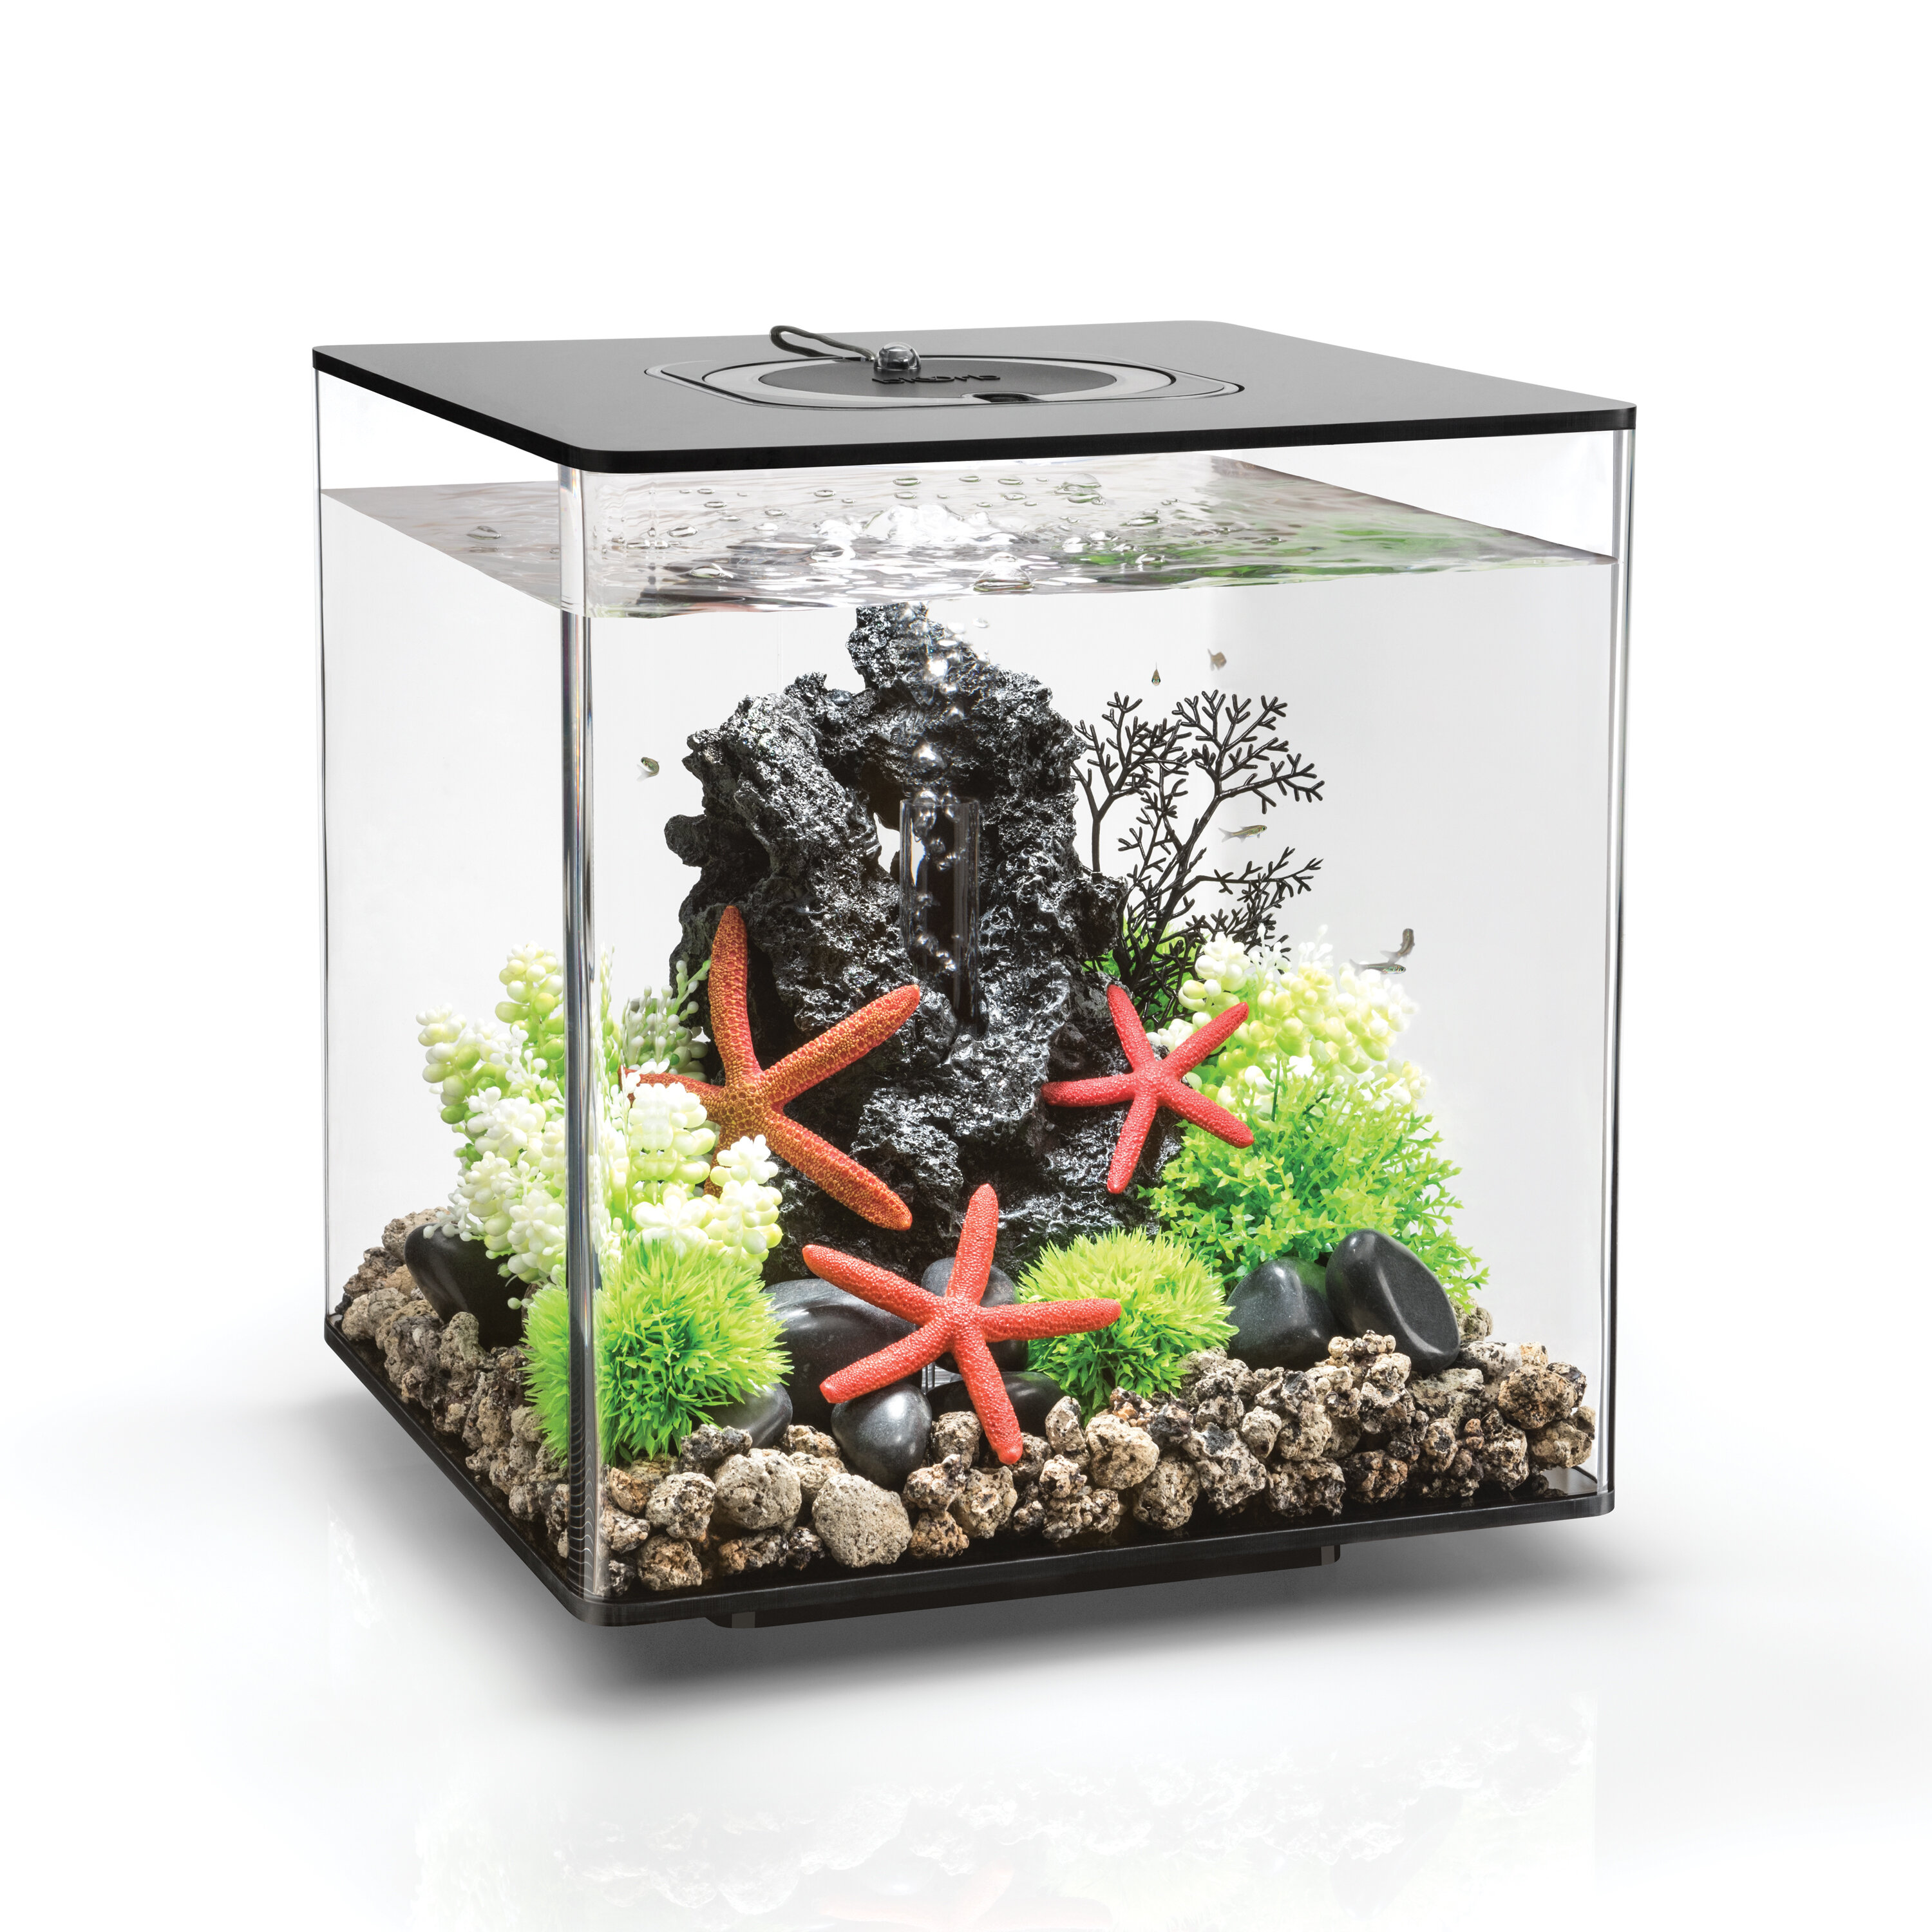 biOrb 8 Gallon Square Aquarium Tank with MCR Light